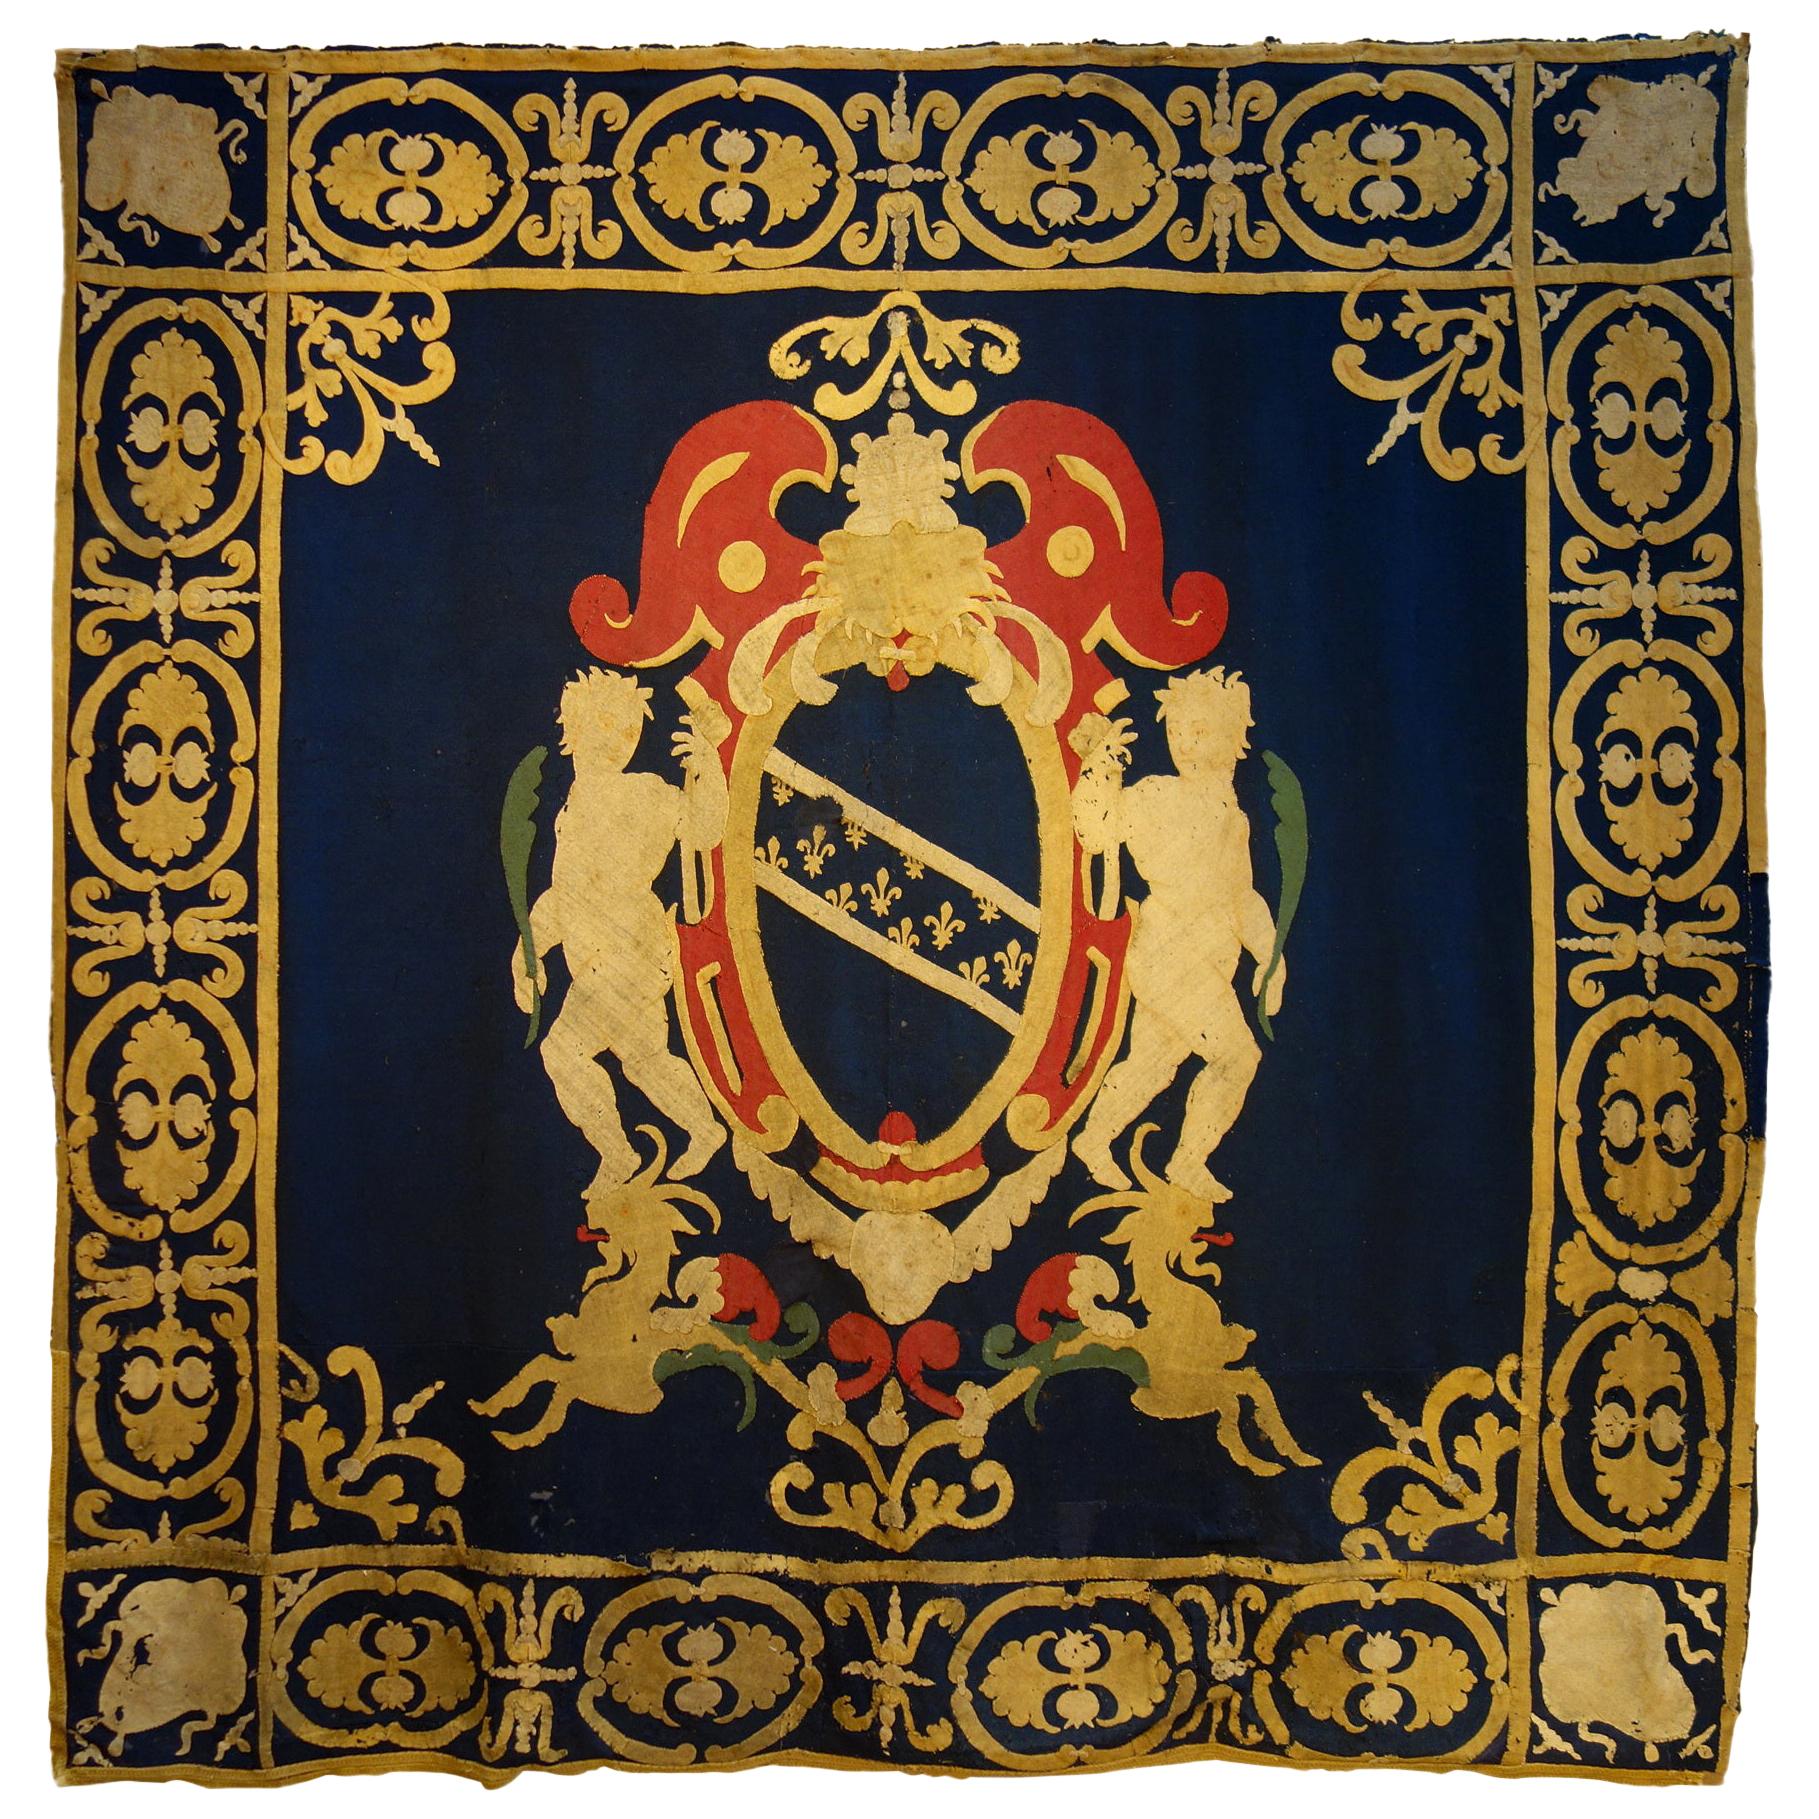 Manteau héraldique italien de la fin du XVIIe siècle - Tapisserie d'armoiries, Lucques, datant d'environ 1690